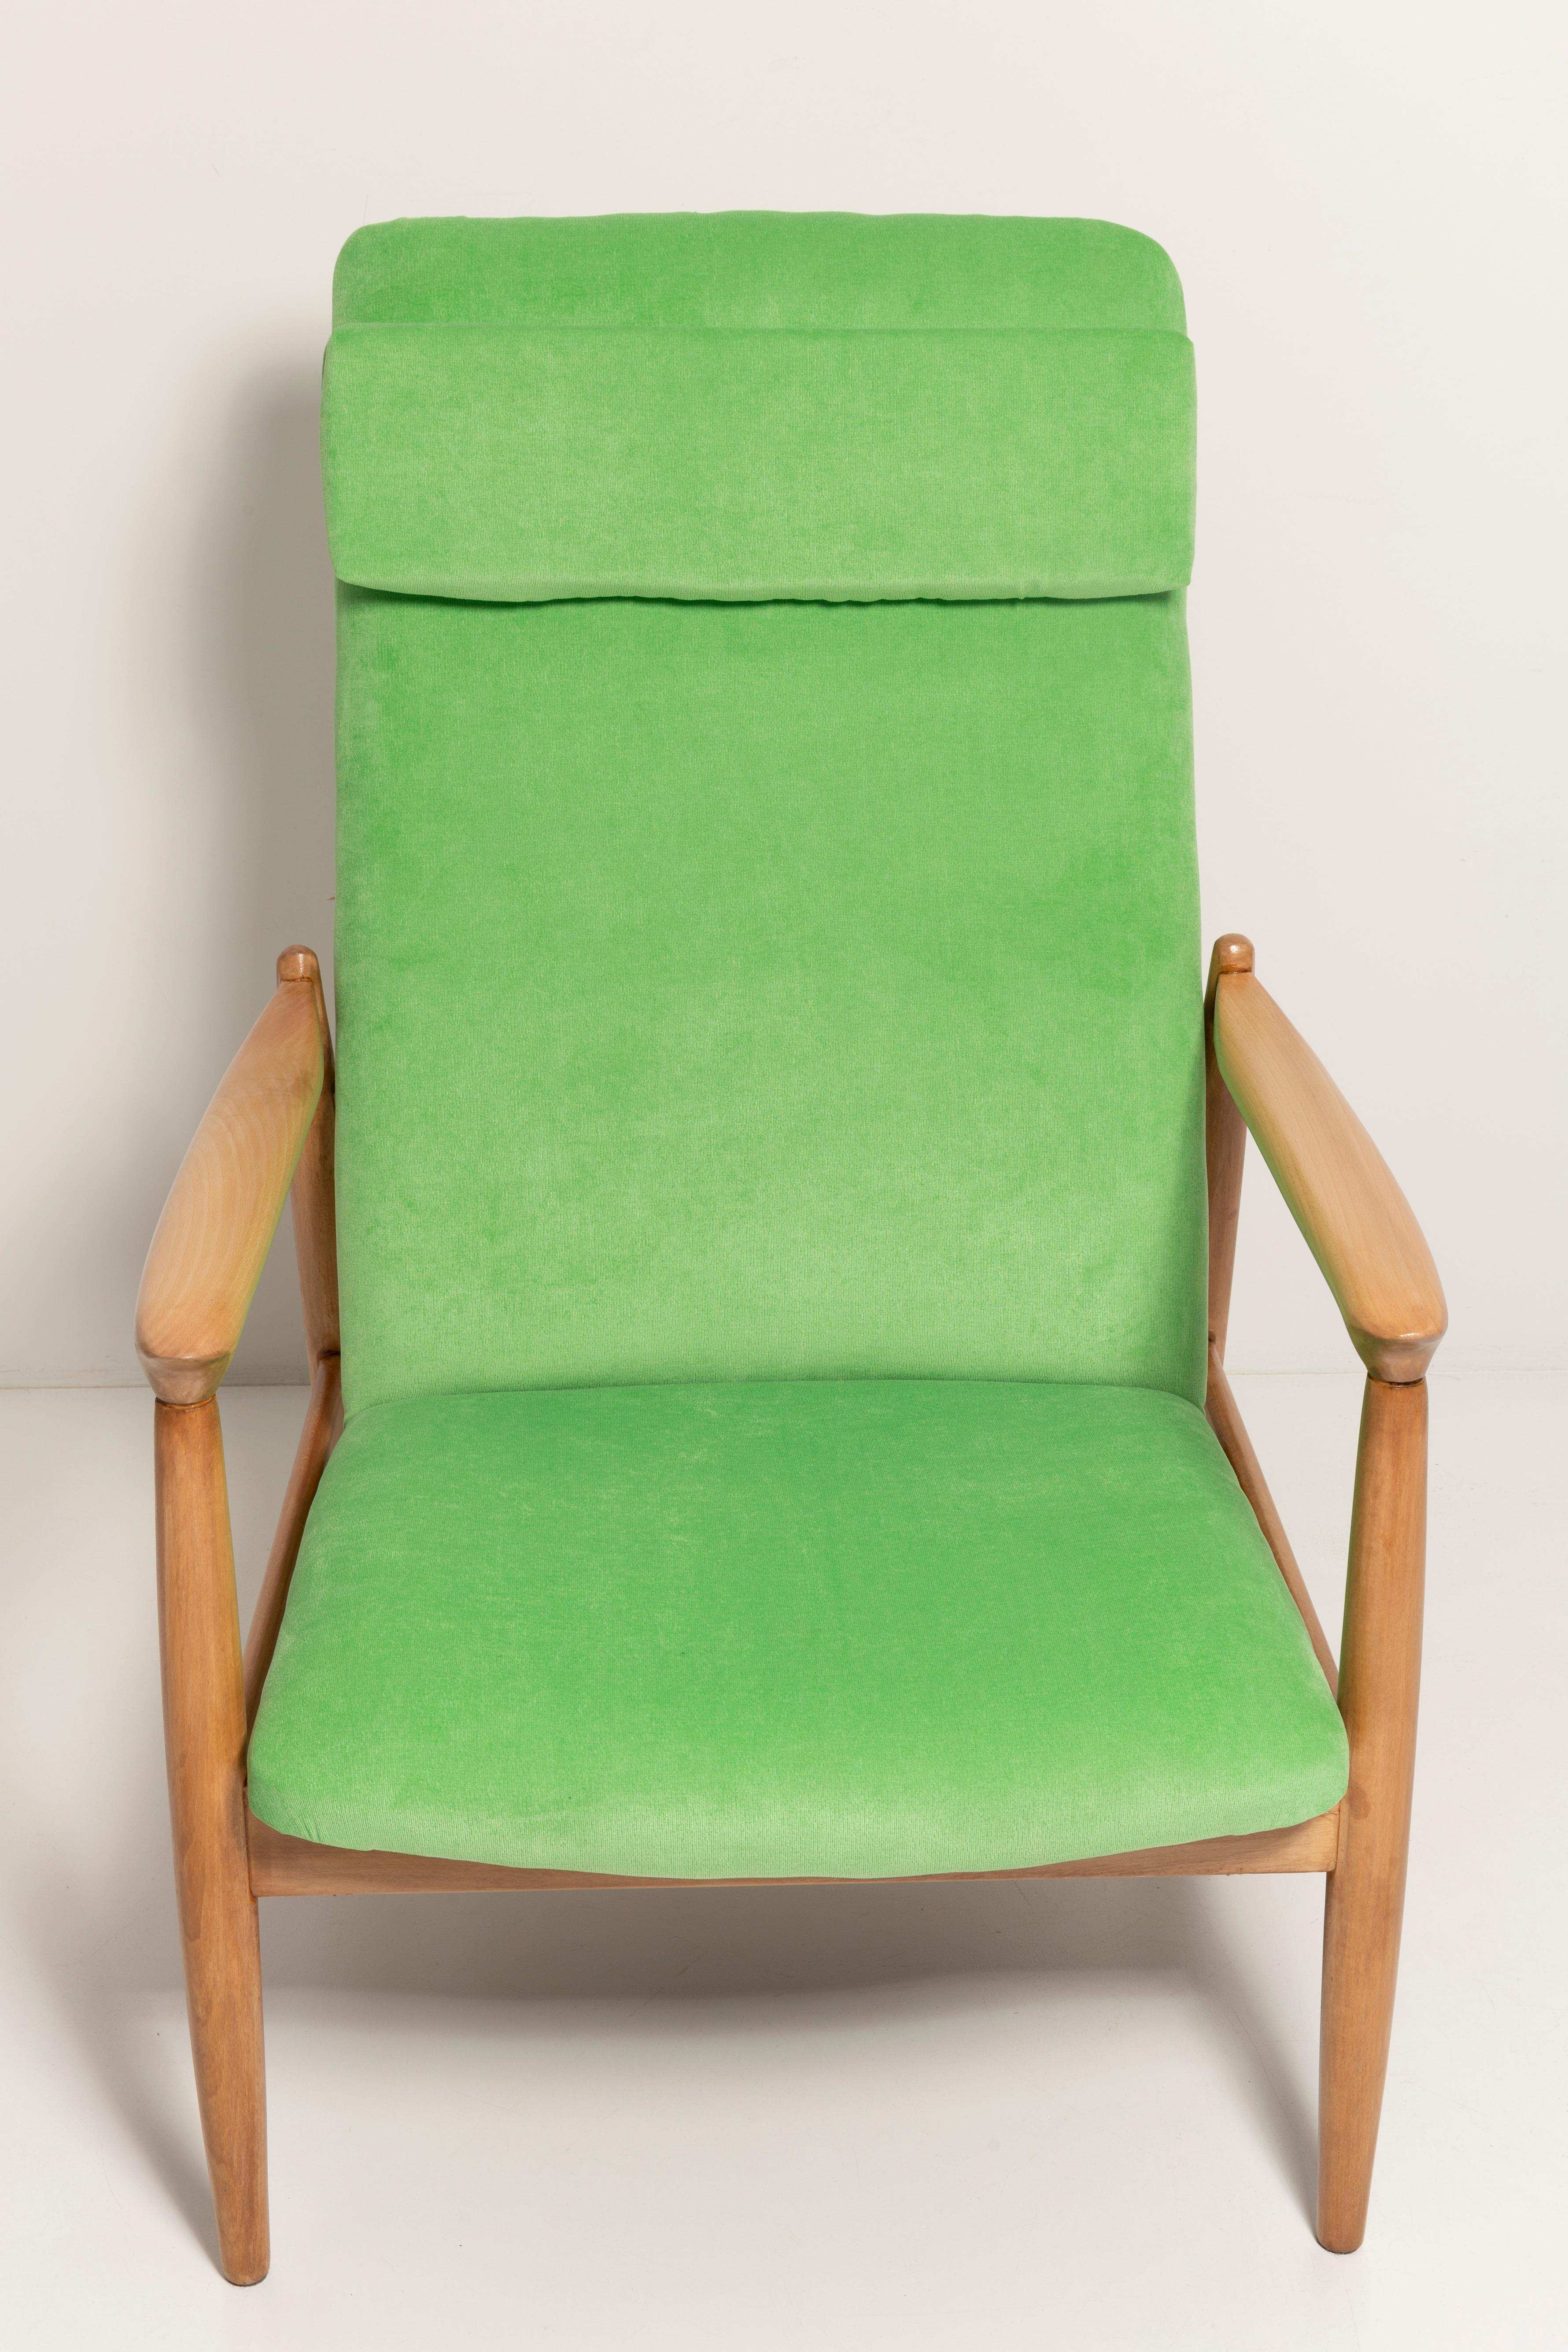 Light Lime Green Velvet Armchair, GFM-64 High, Edmund Homa, 1960s For Sale 3